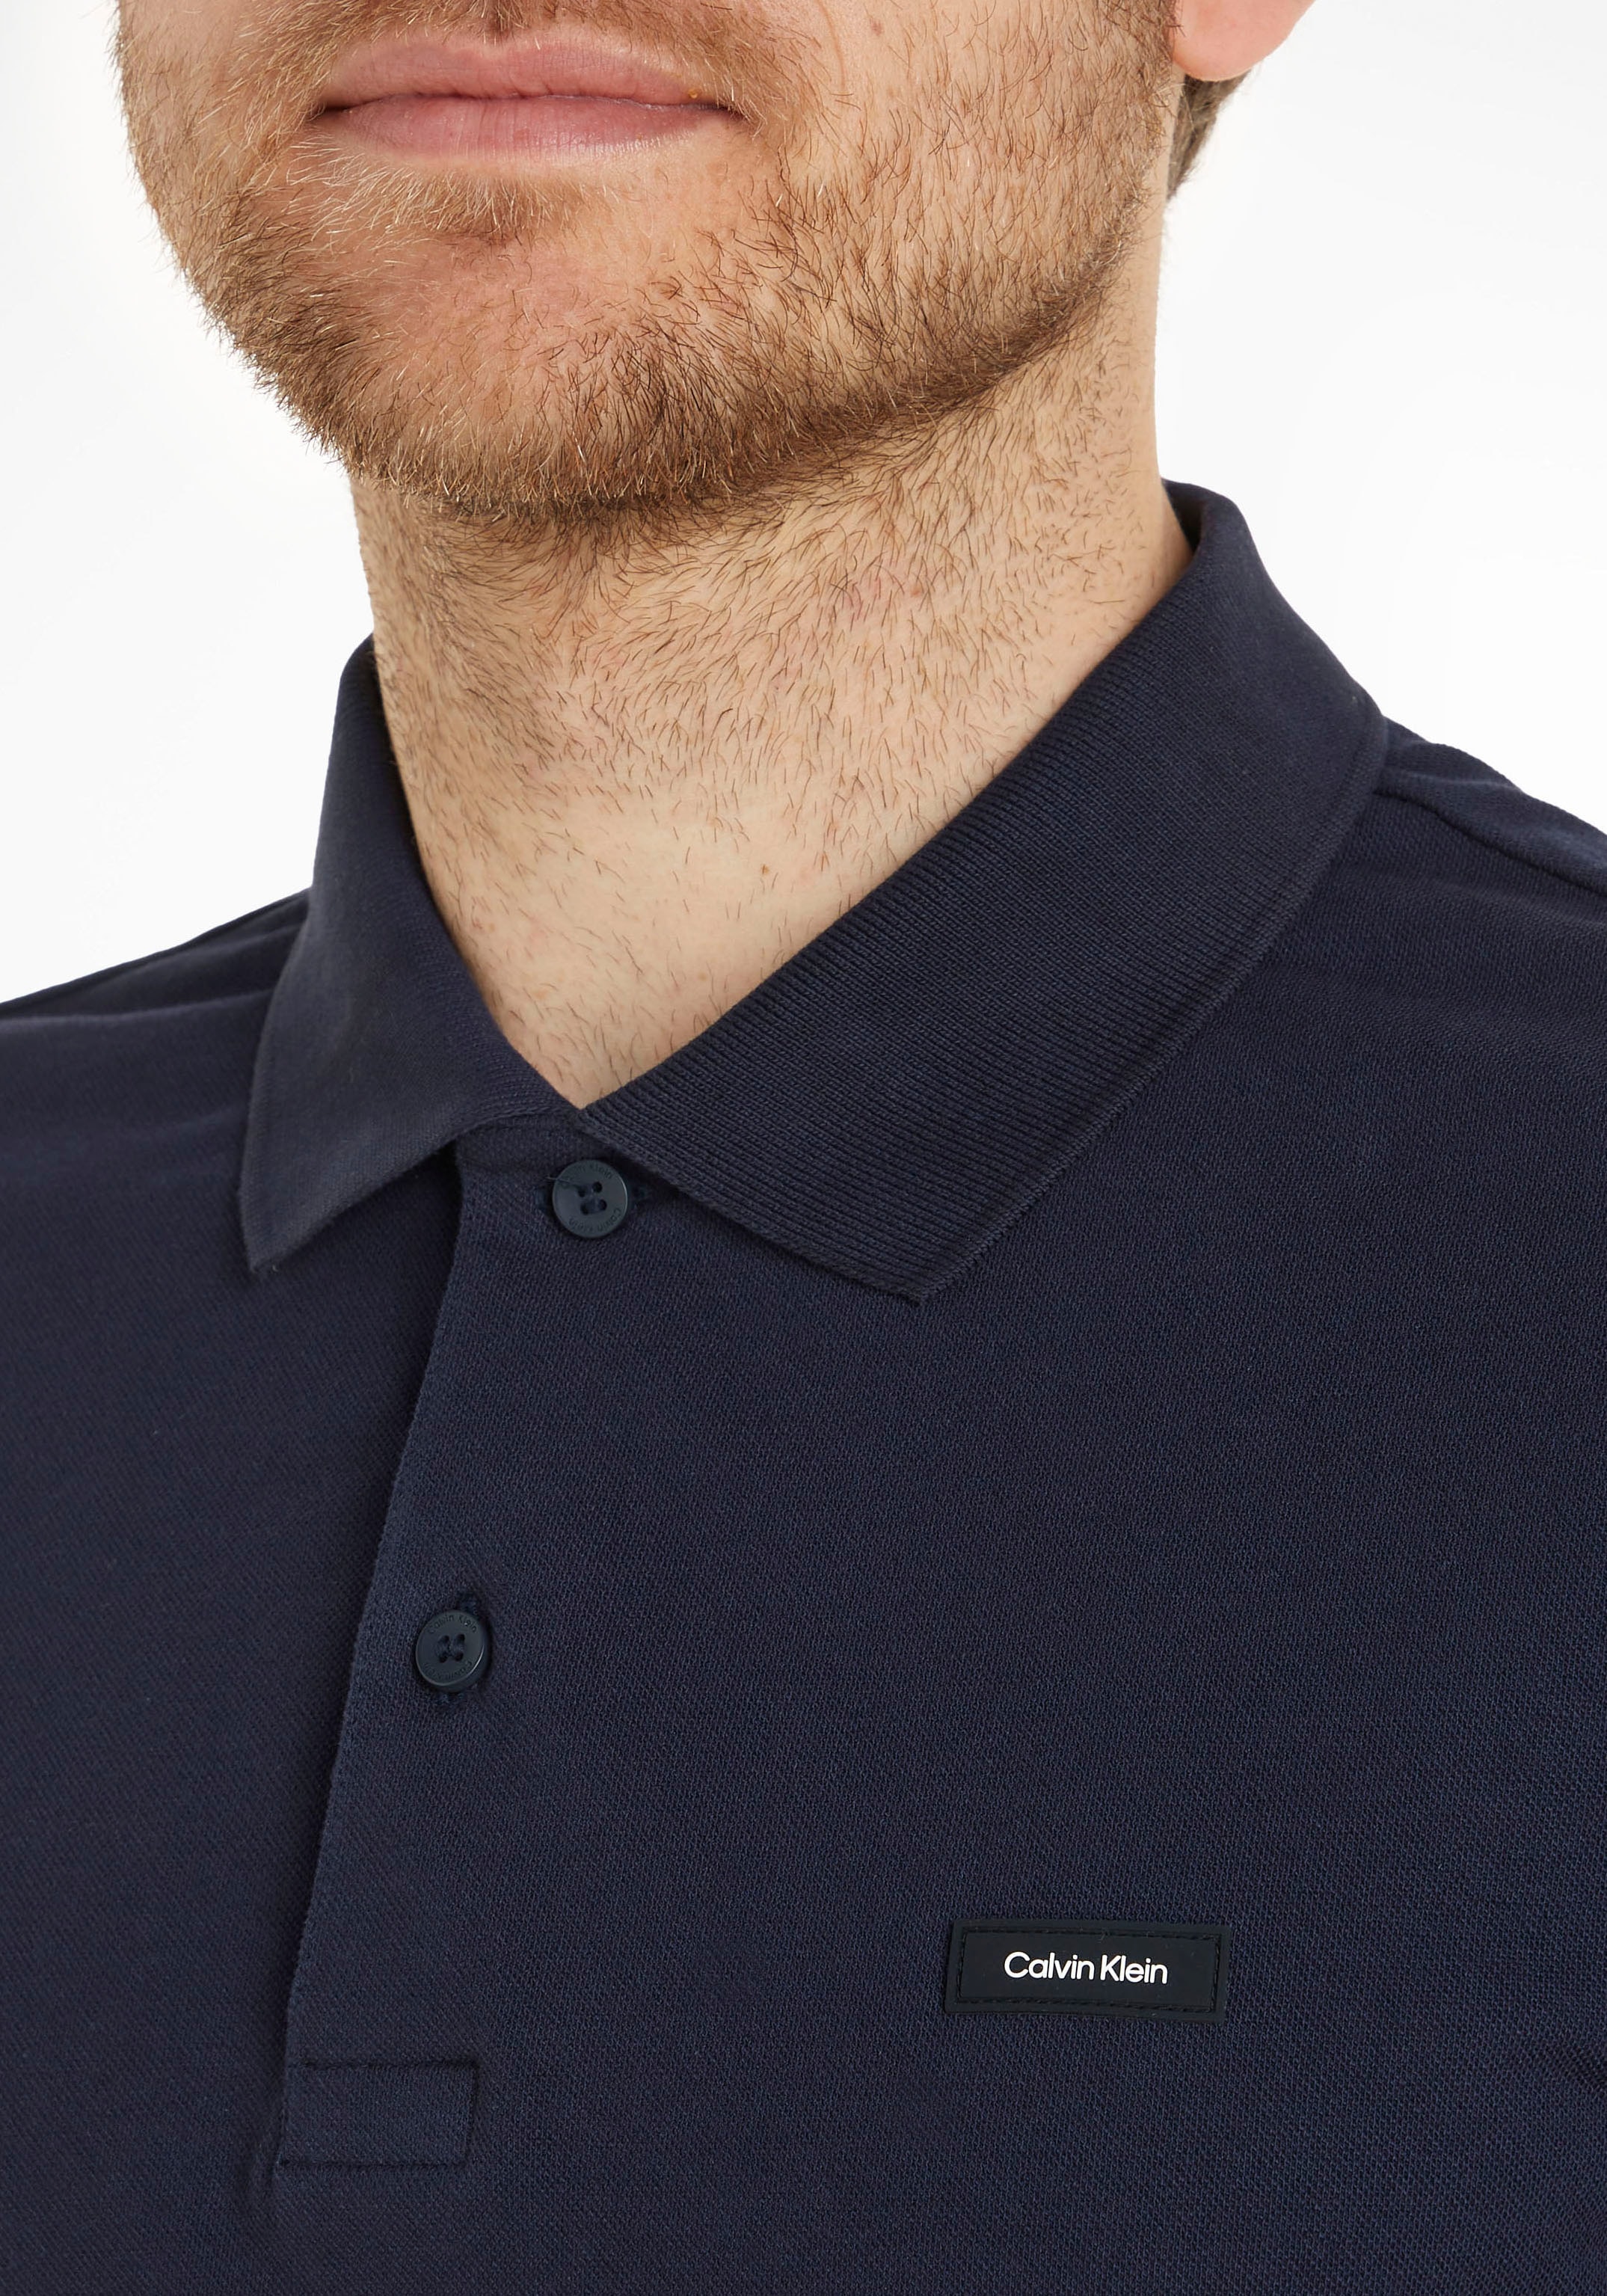 Calvin Klein Brust Poloshirt, online kaufen der bei mit auf OTTO Logo Calvin Klein